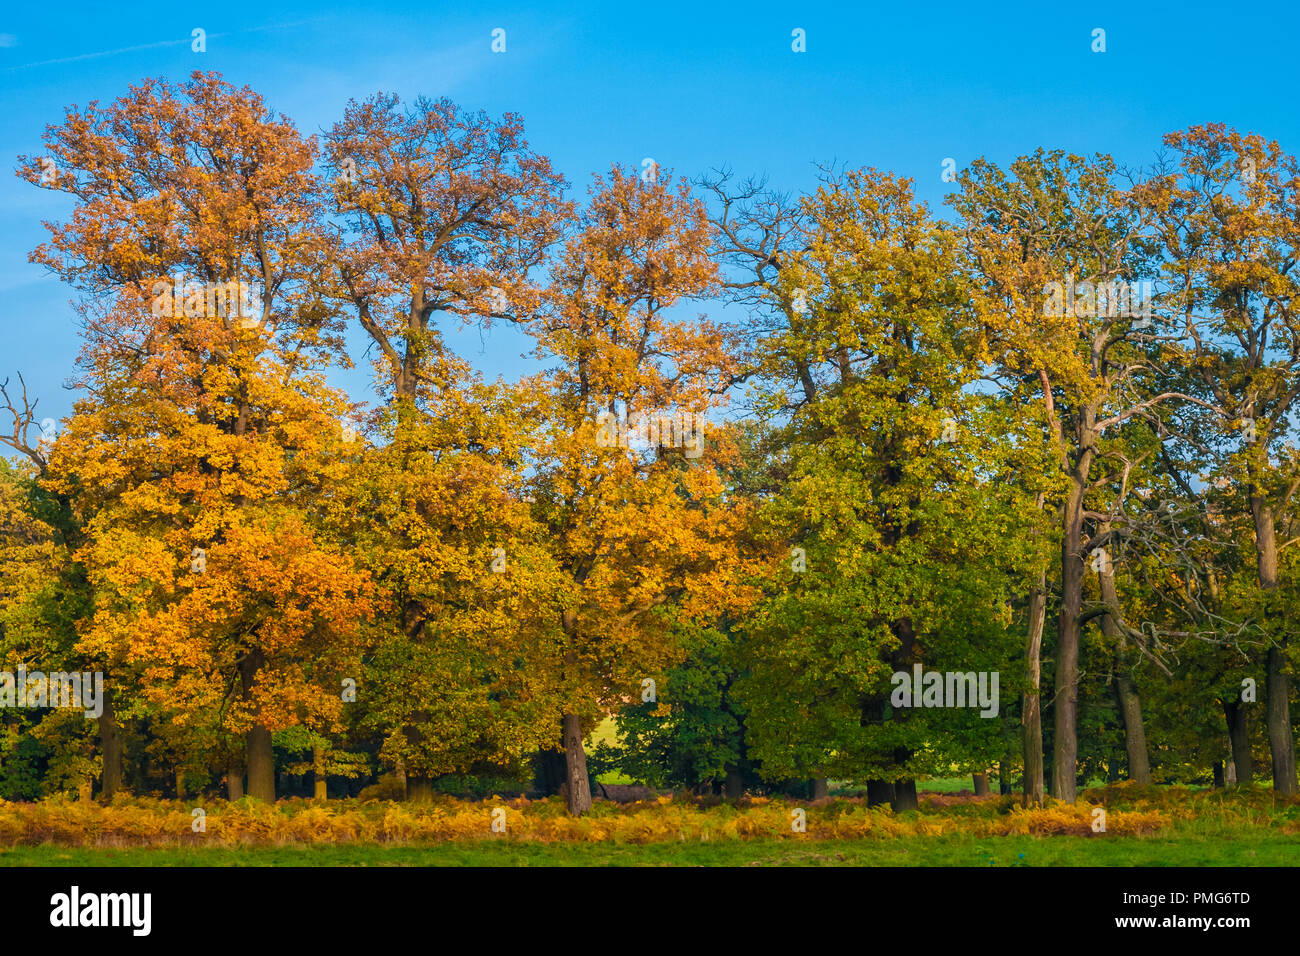 Una bella foto di una fila di alberi di alto fusto con foglie colorate che mostra un autunno dorato in una giornata di sole con un bel cielo blu presso la famosa foresta... Foto Stock